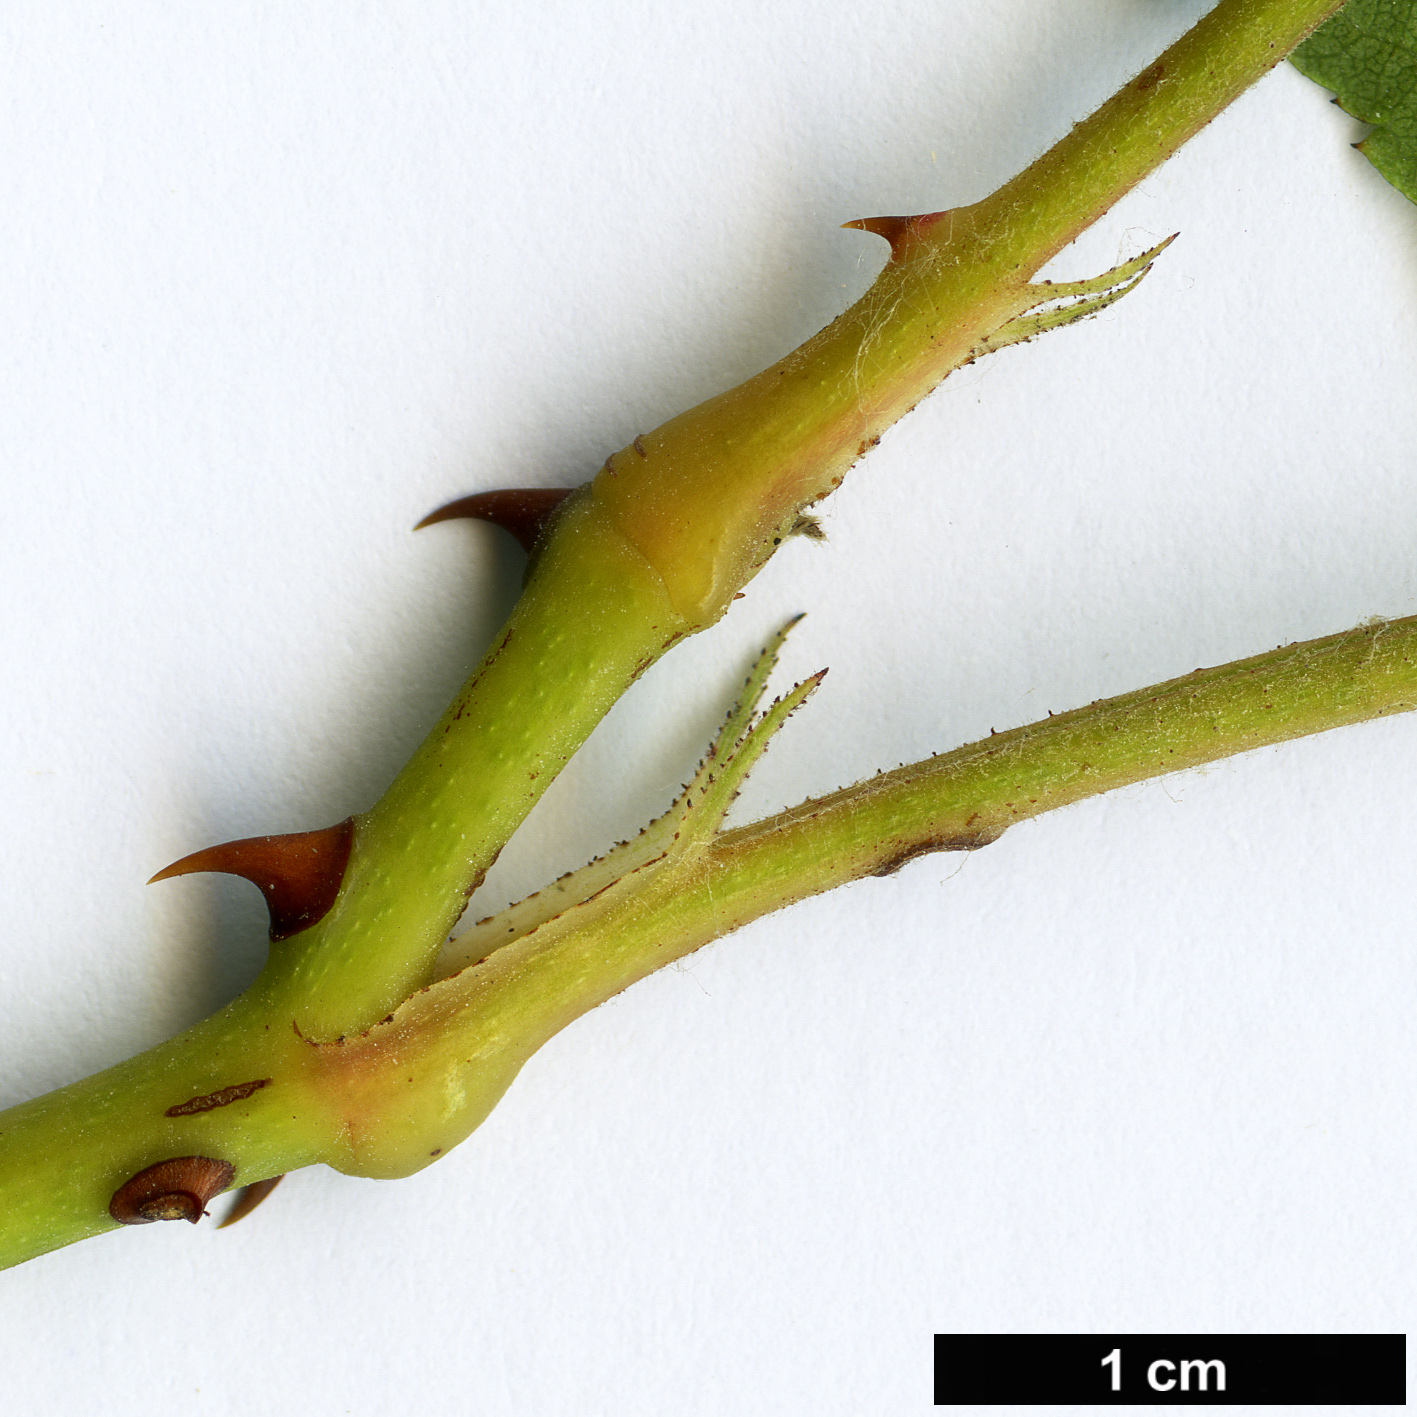 High resolution image: Family: Rosaceae - Genus: Rosa - Taxon: longicuspis